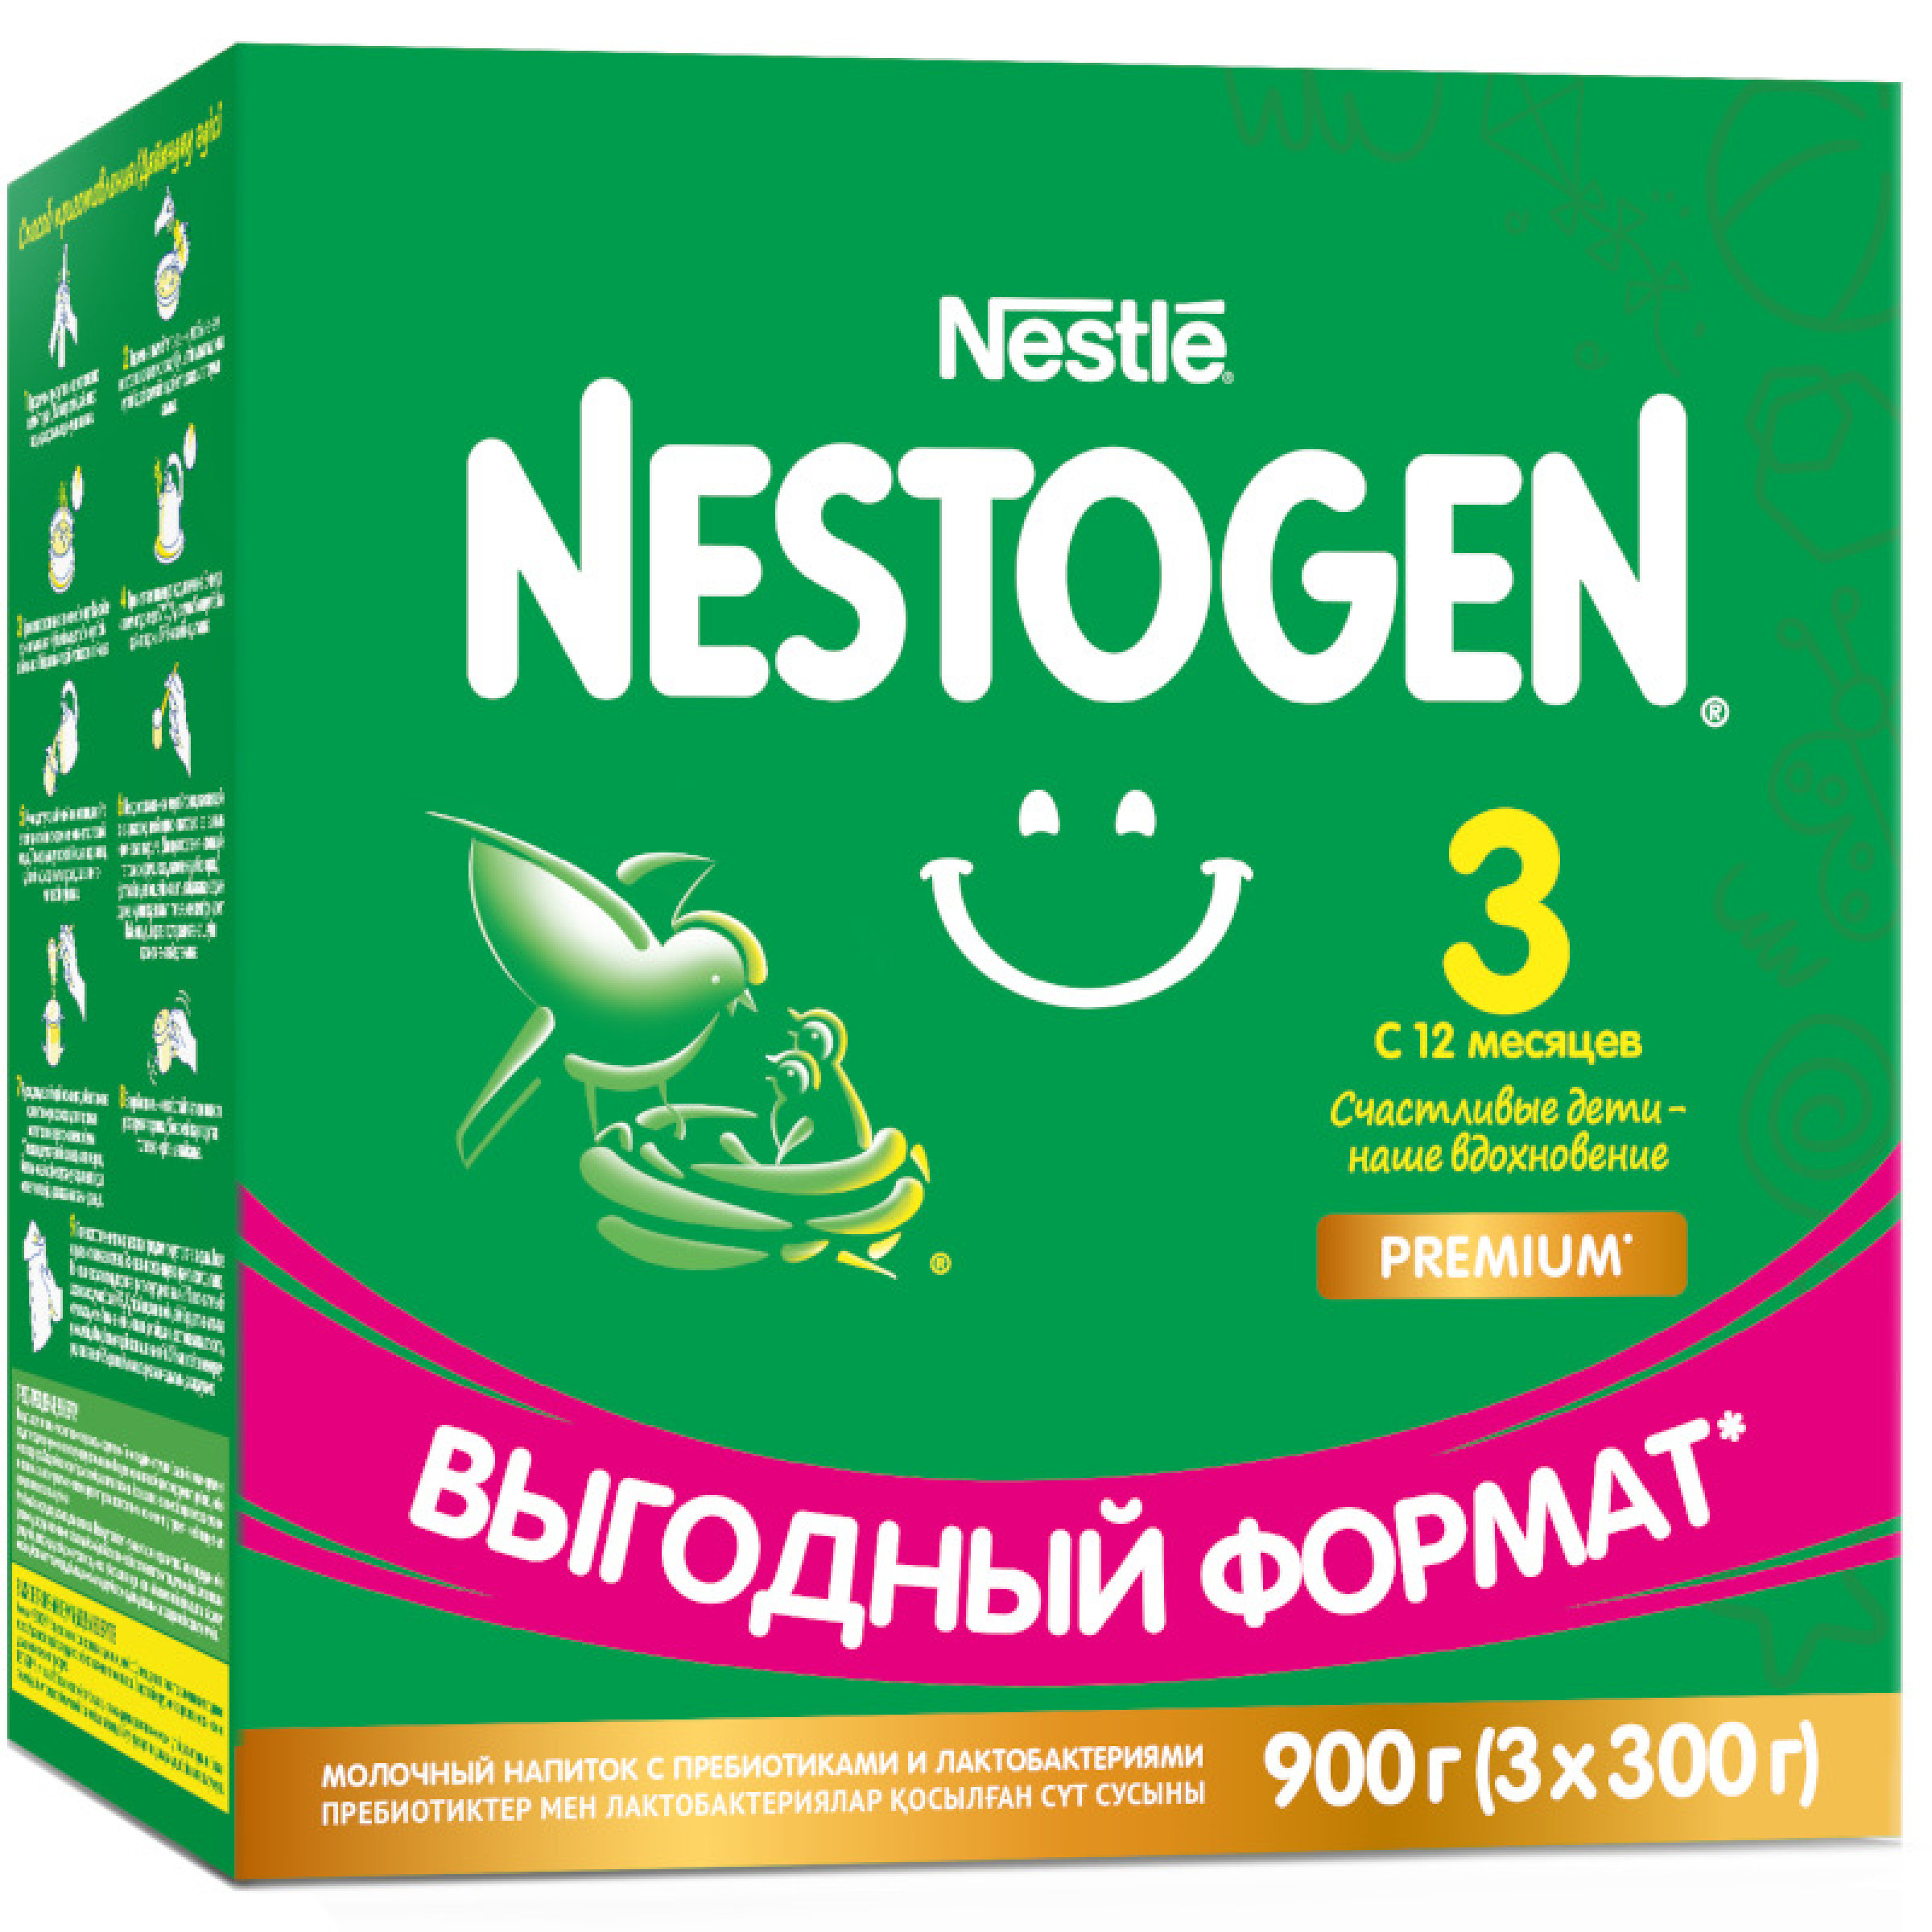 Сухой молочный напиток Nestogen 3 с 12 месяцев с пребиотиками и лактобактериями 900 г